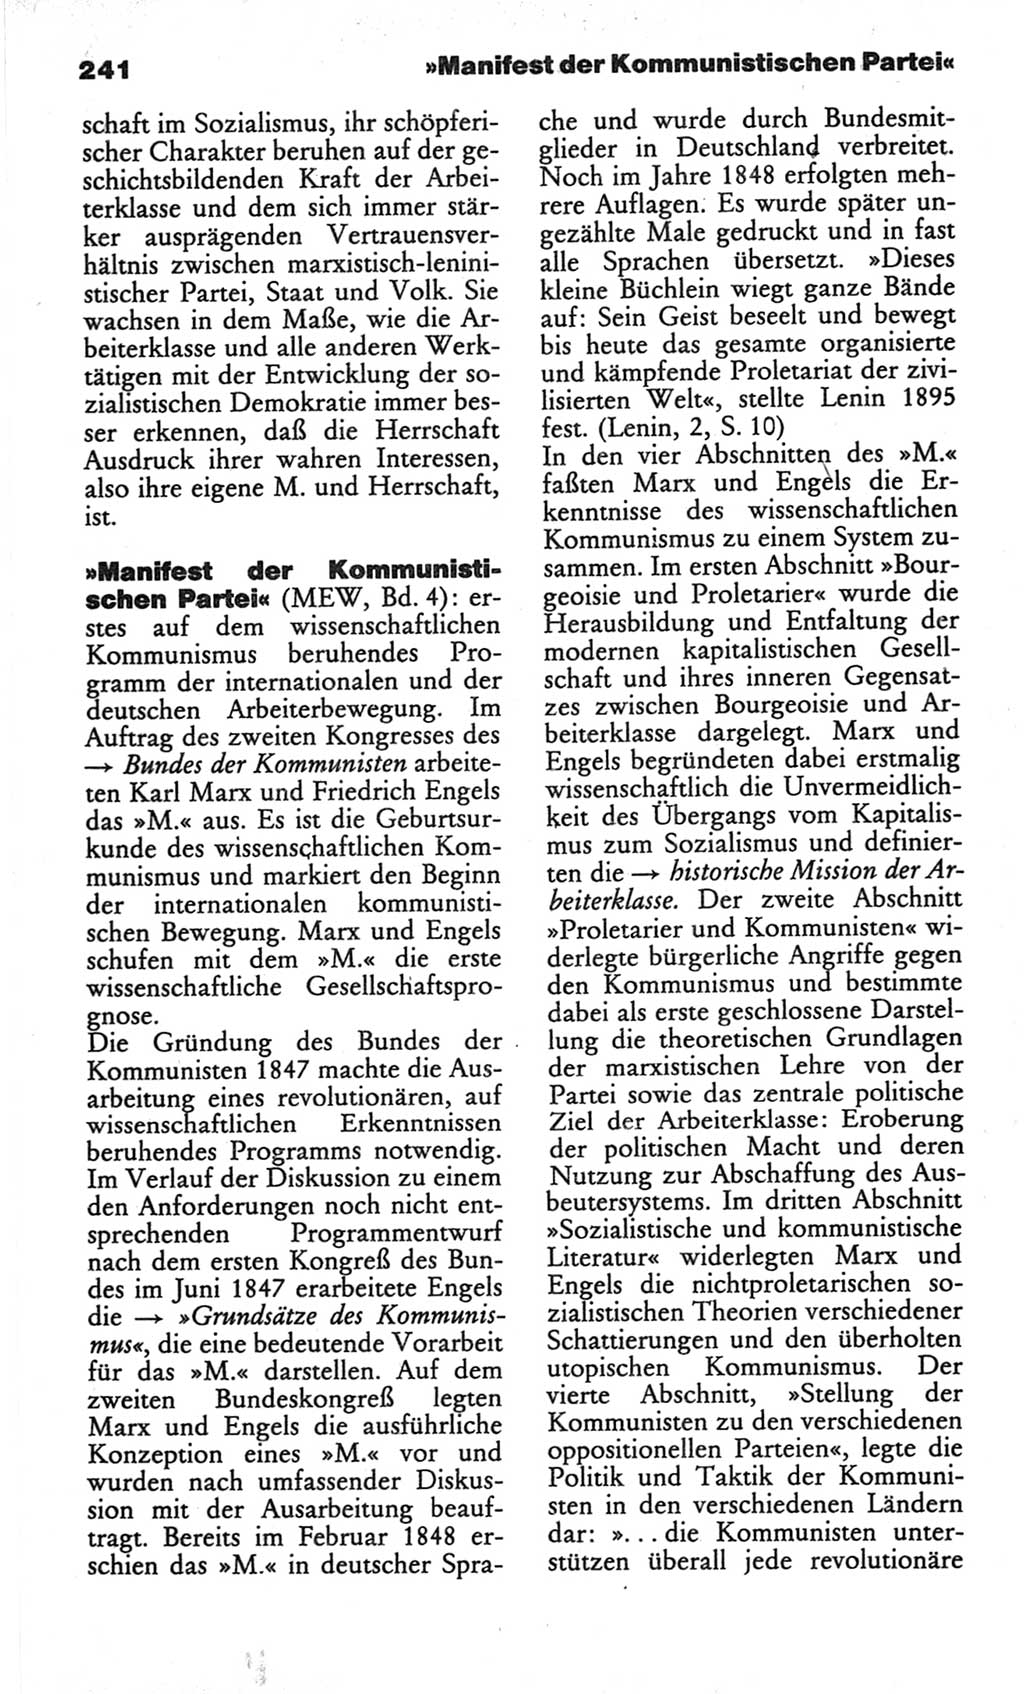 Wörterbuch des wissenschaftlichen Kommunismus [Deutsche Demokratische Republik (DDR)] 1982, Seite 241 (Wb. wiss. Komm. DDR 1982, S. 241)